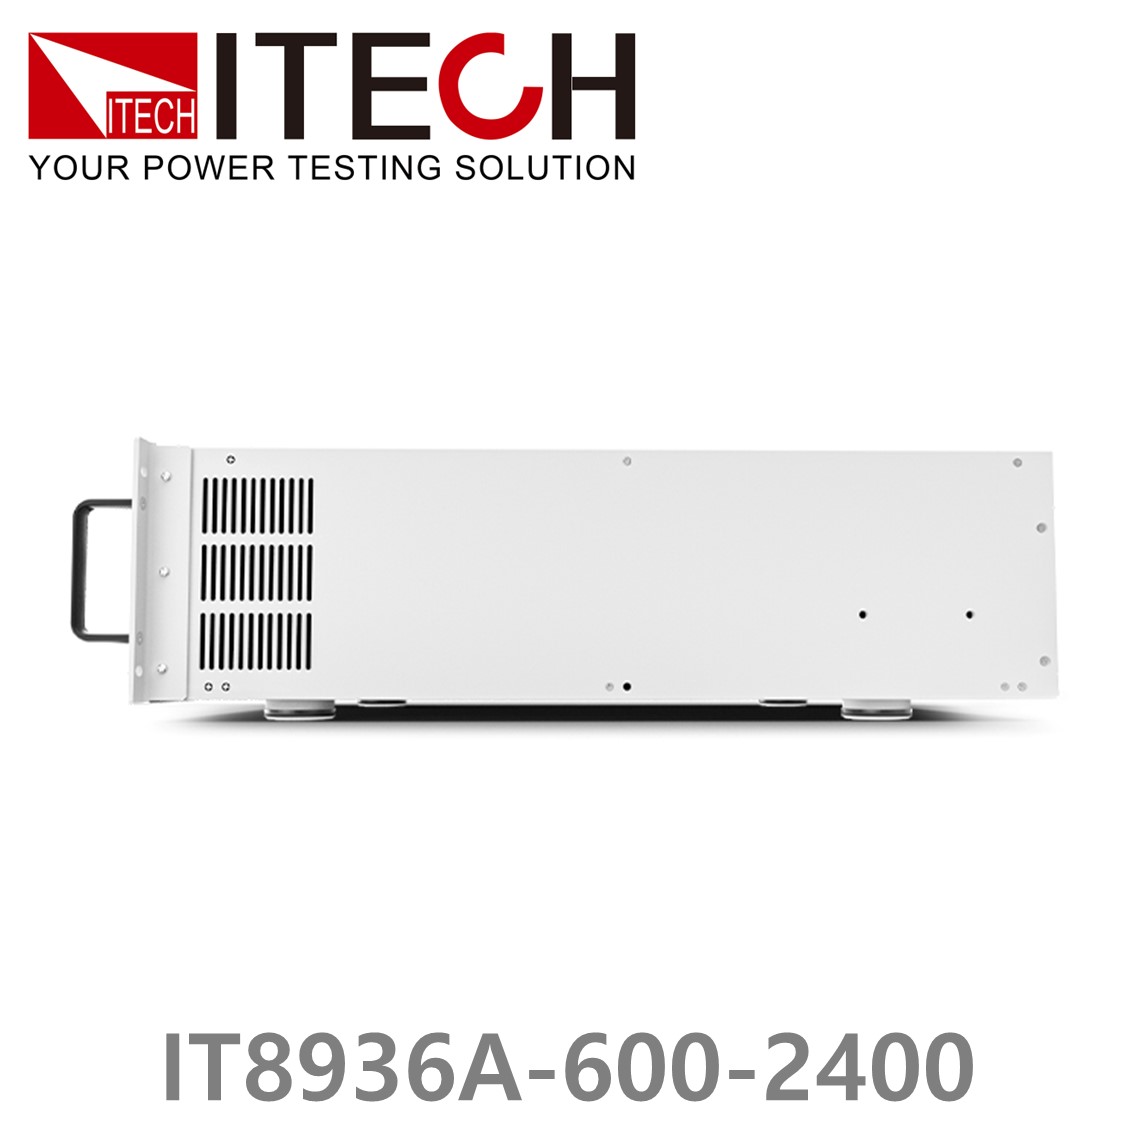 [ ITECH ] IT8936A-600-2400  고성능 고전력 DC 전자로드 600V/2400A/36kW (27U)